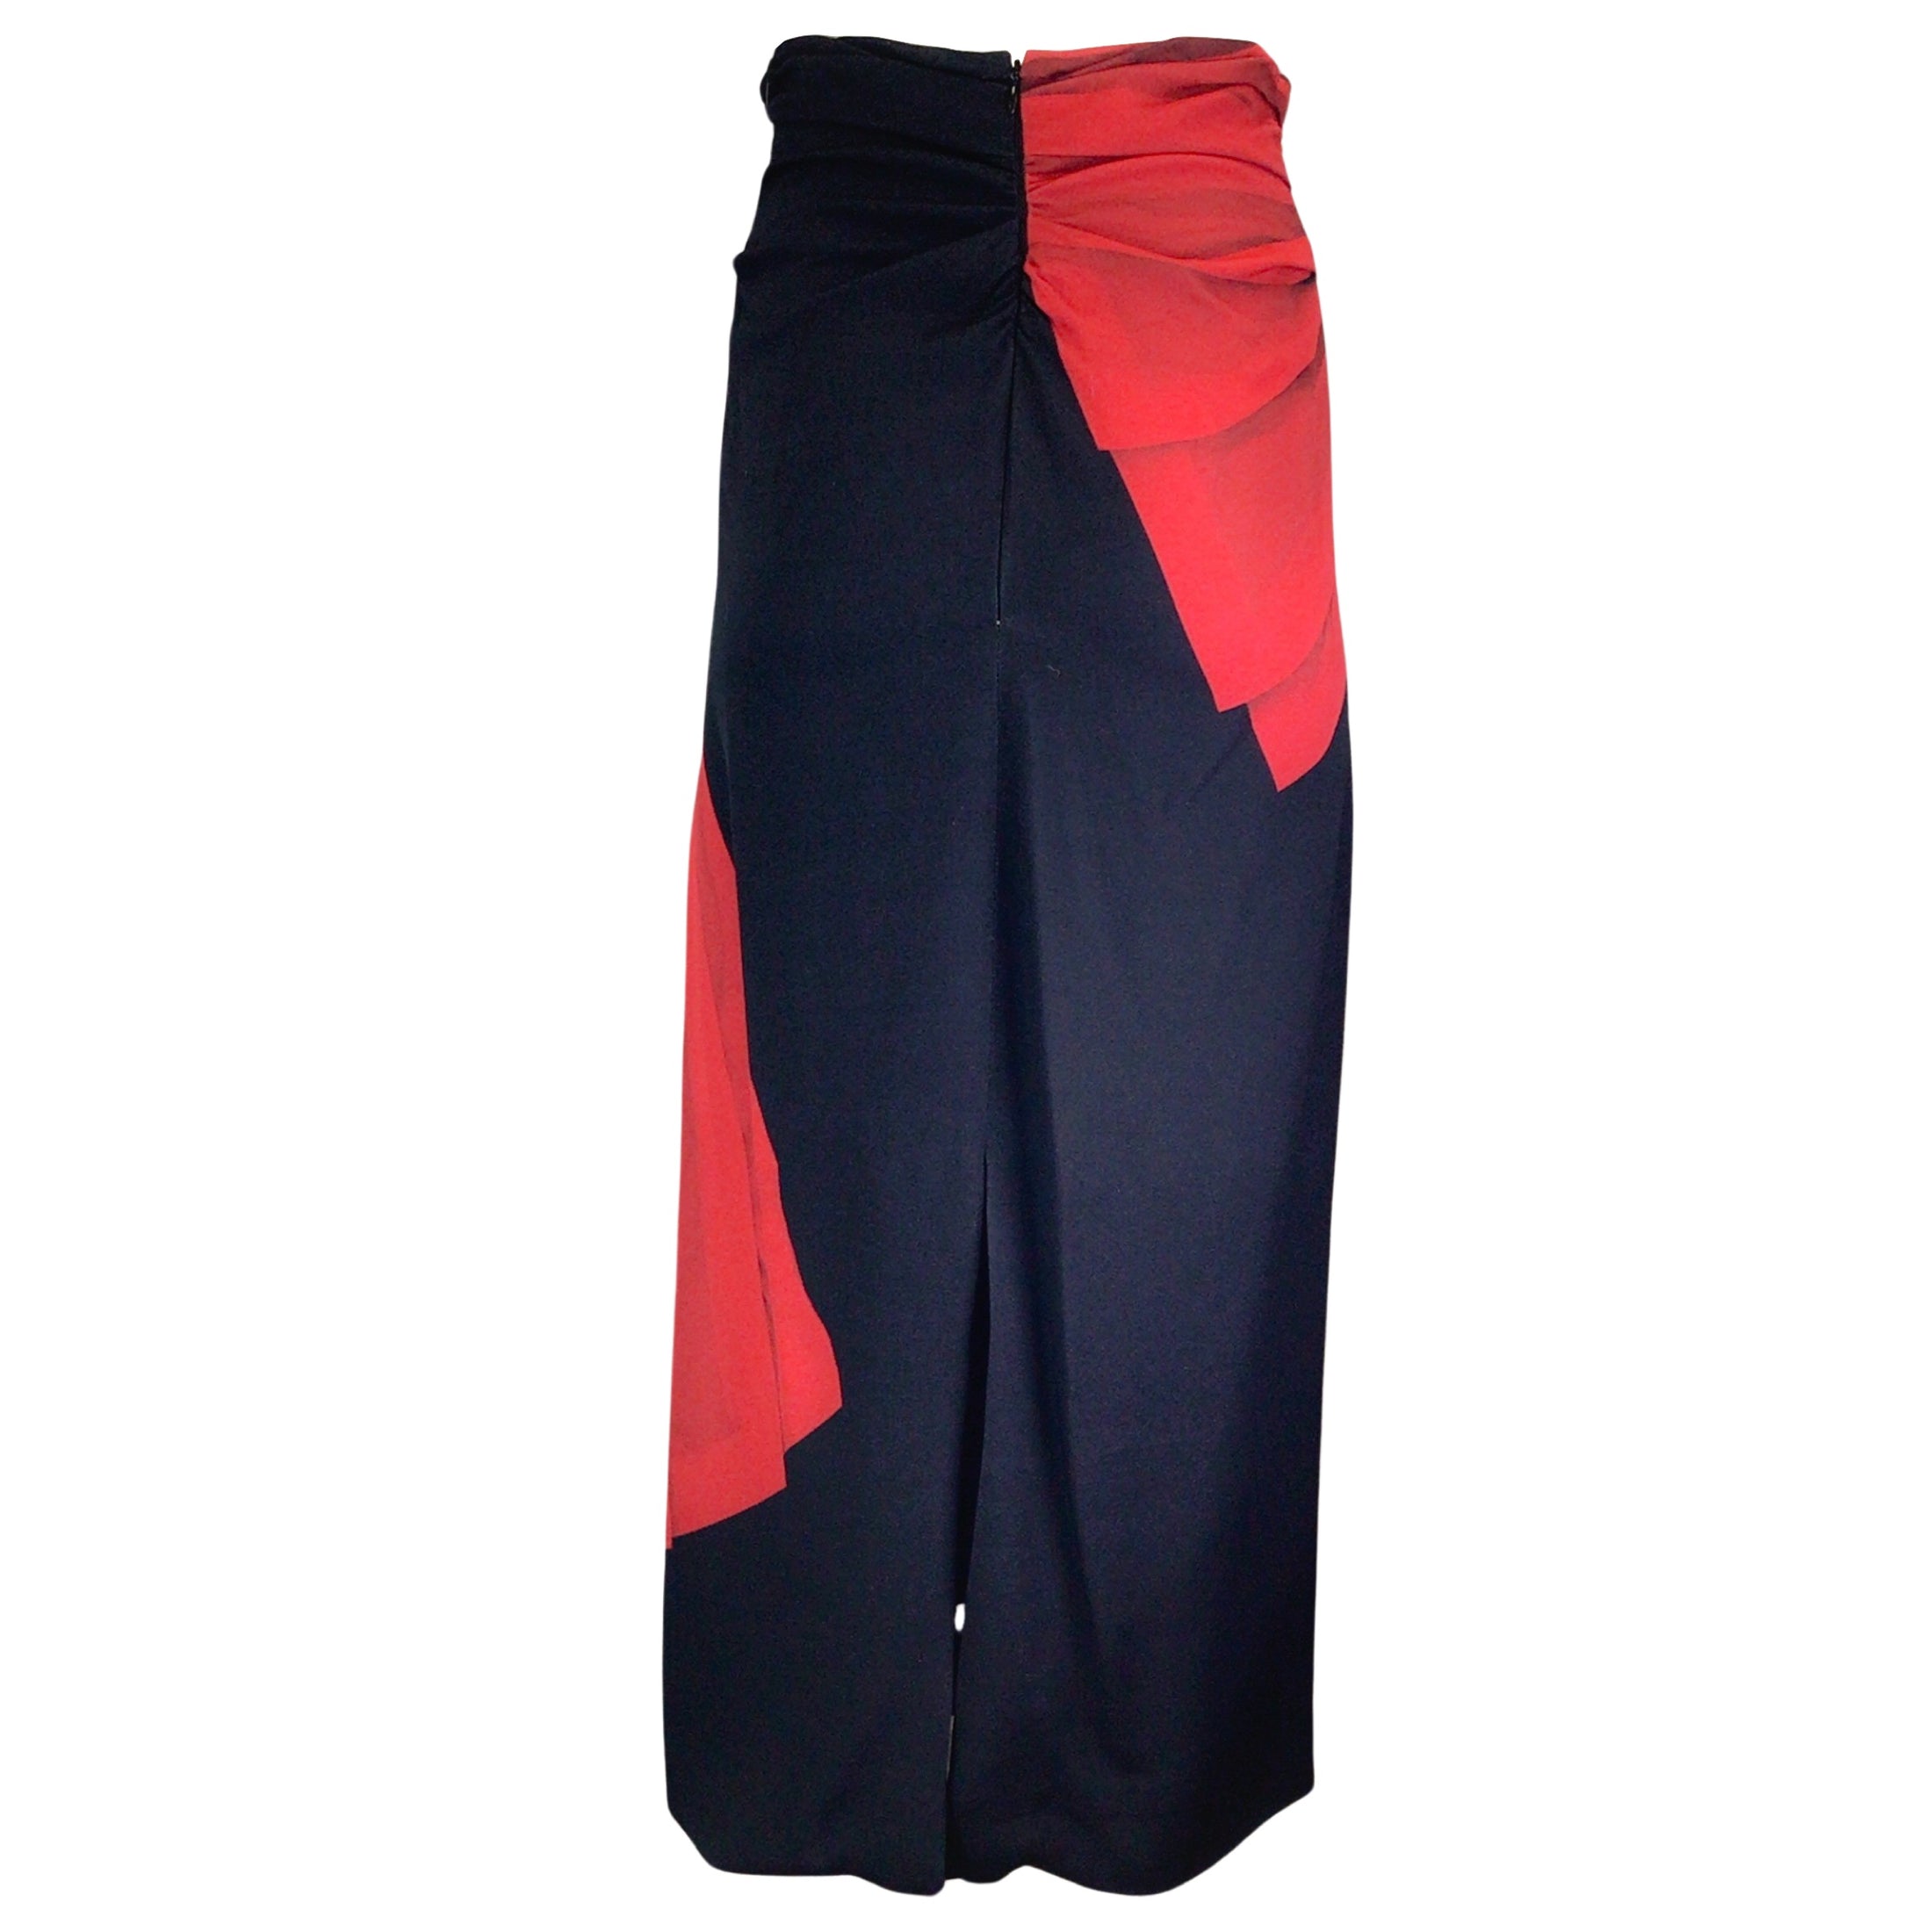 Dries van Noten Black / Red Printed Crepe Midi Skirt